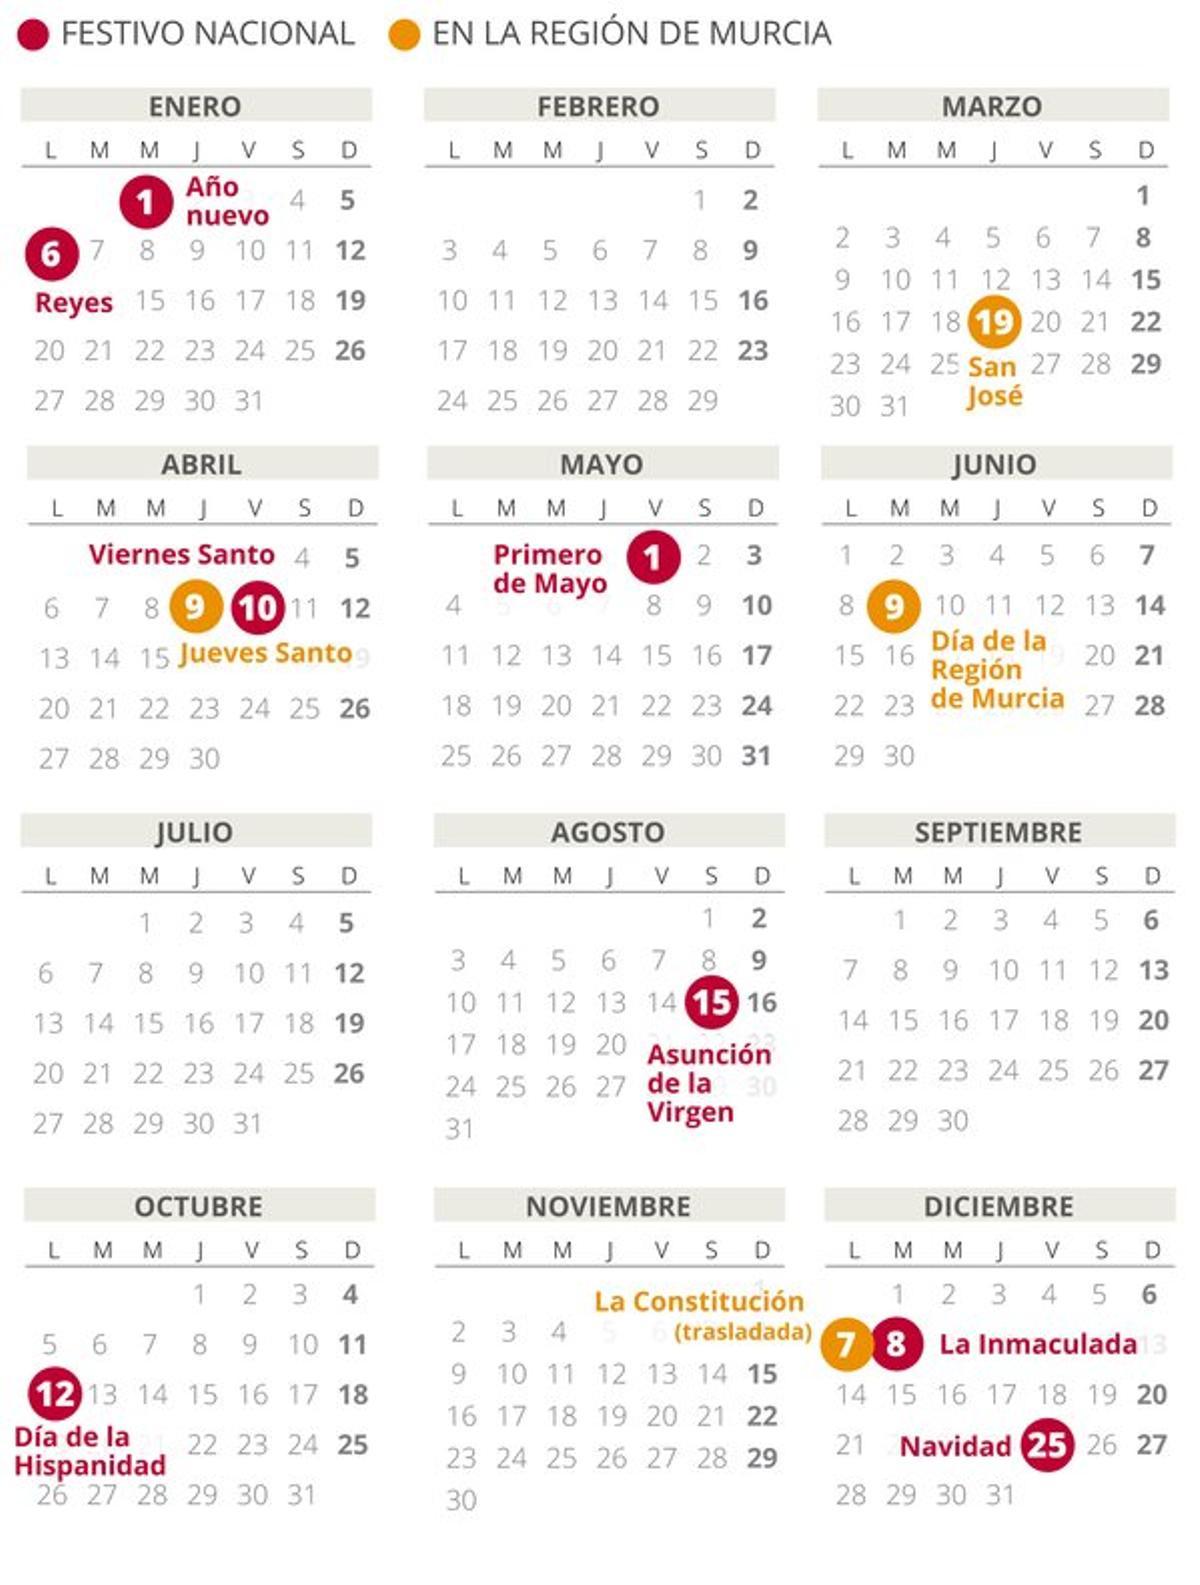 Calendario laboral de la Región de Murcia del 2020.